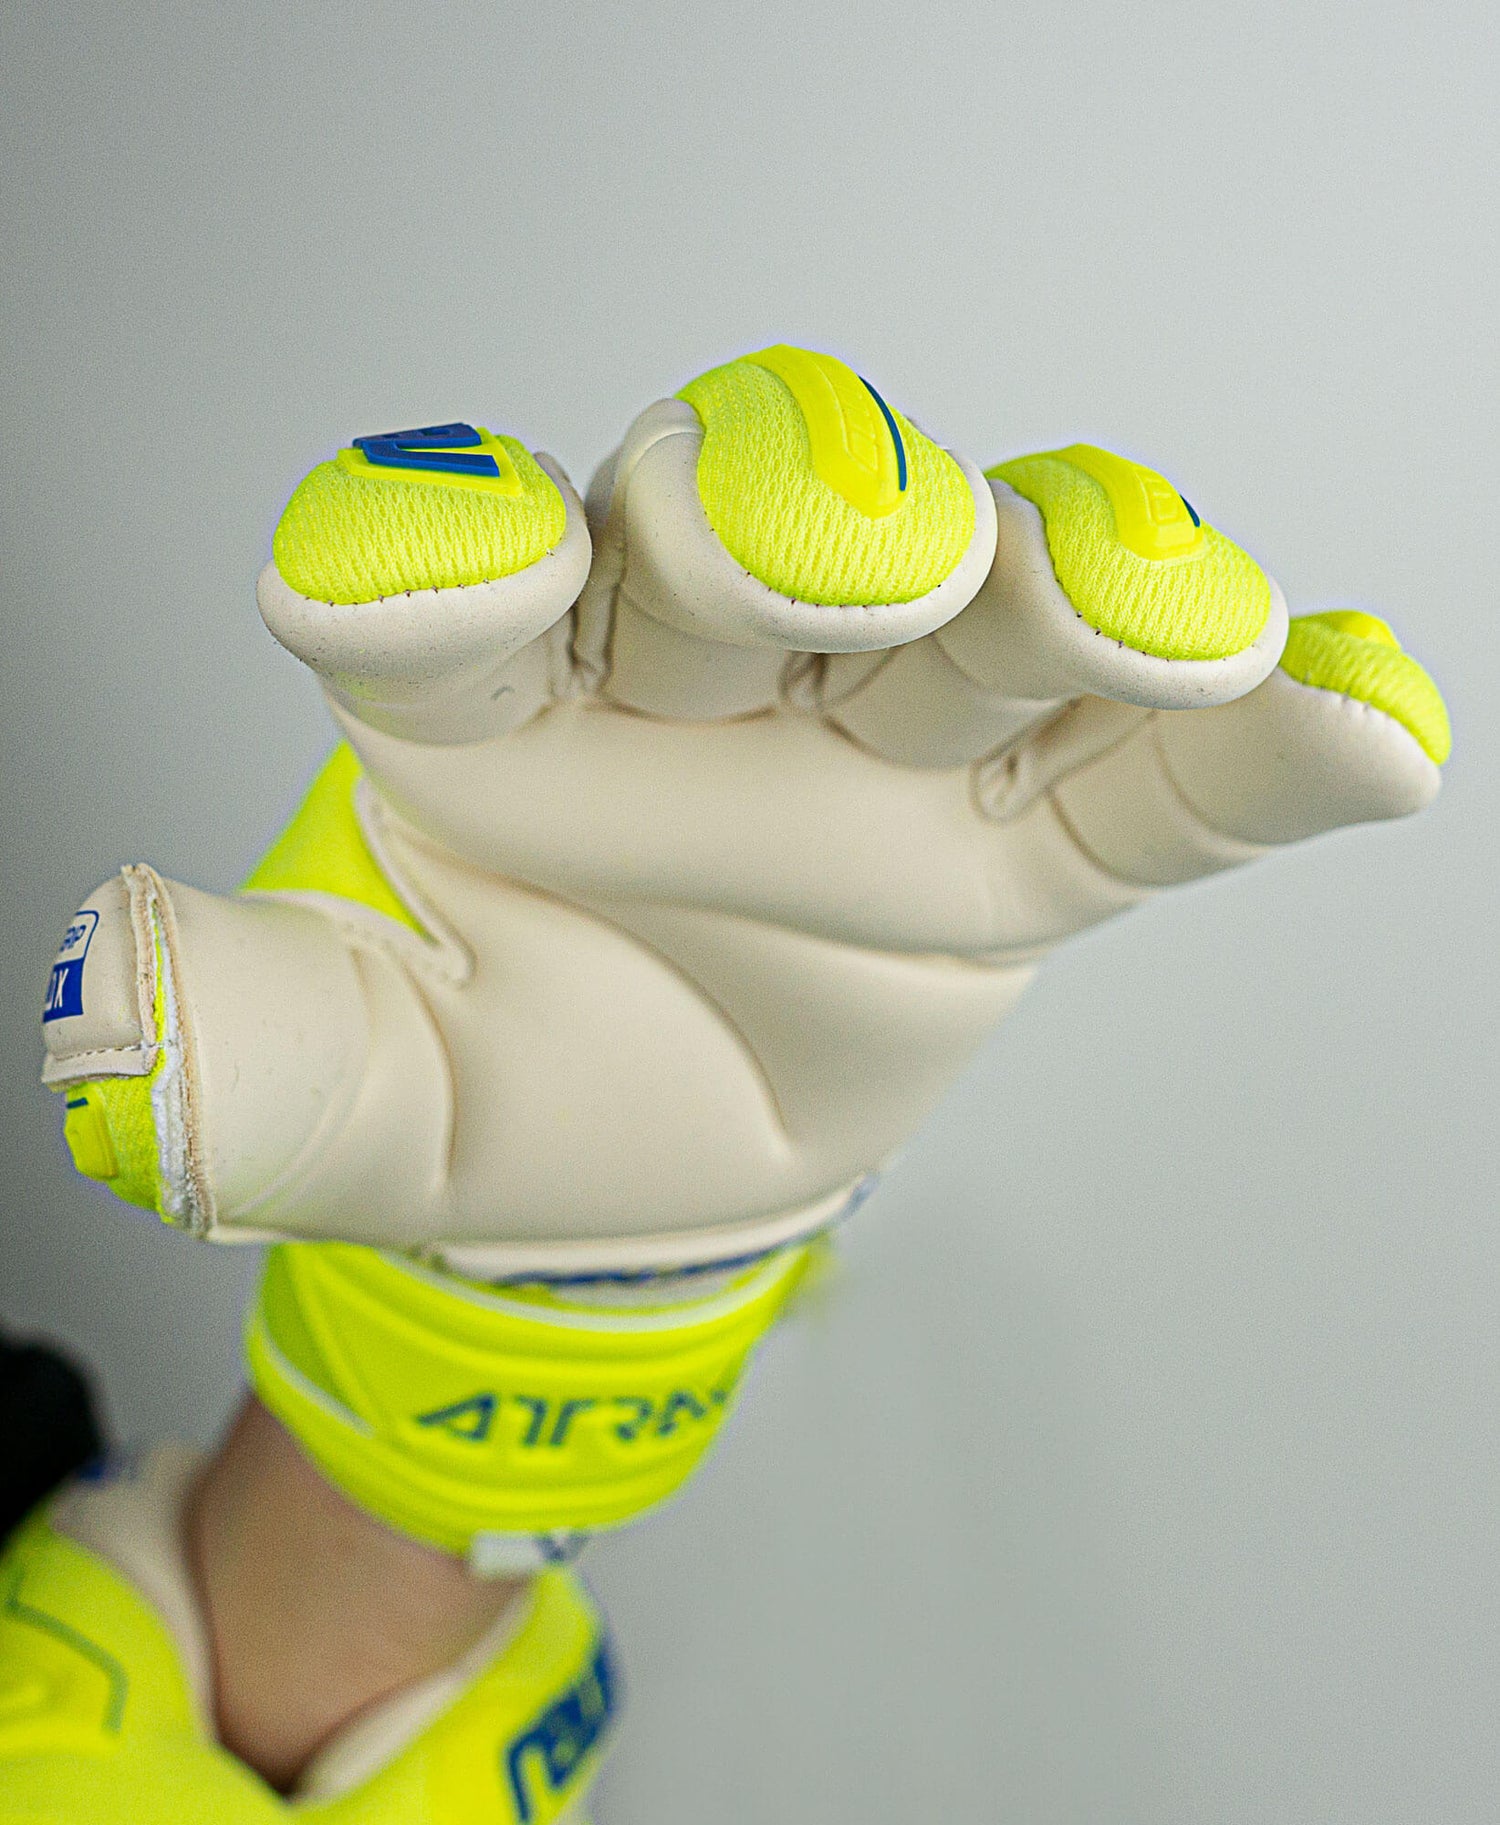 Reusch Attrakt Freegel Gold X Finger Support Goalkeeper Gloves - Yellow-Blue-White (Detail 2)